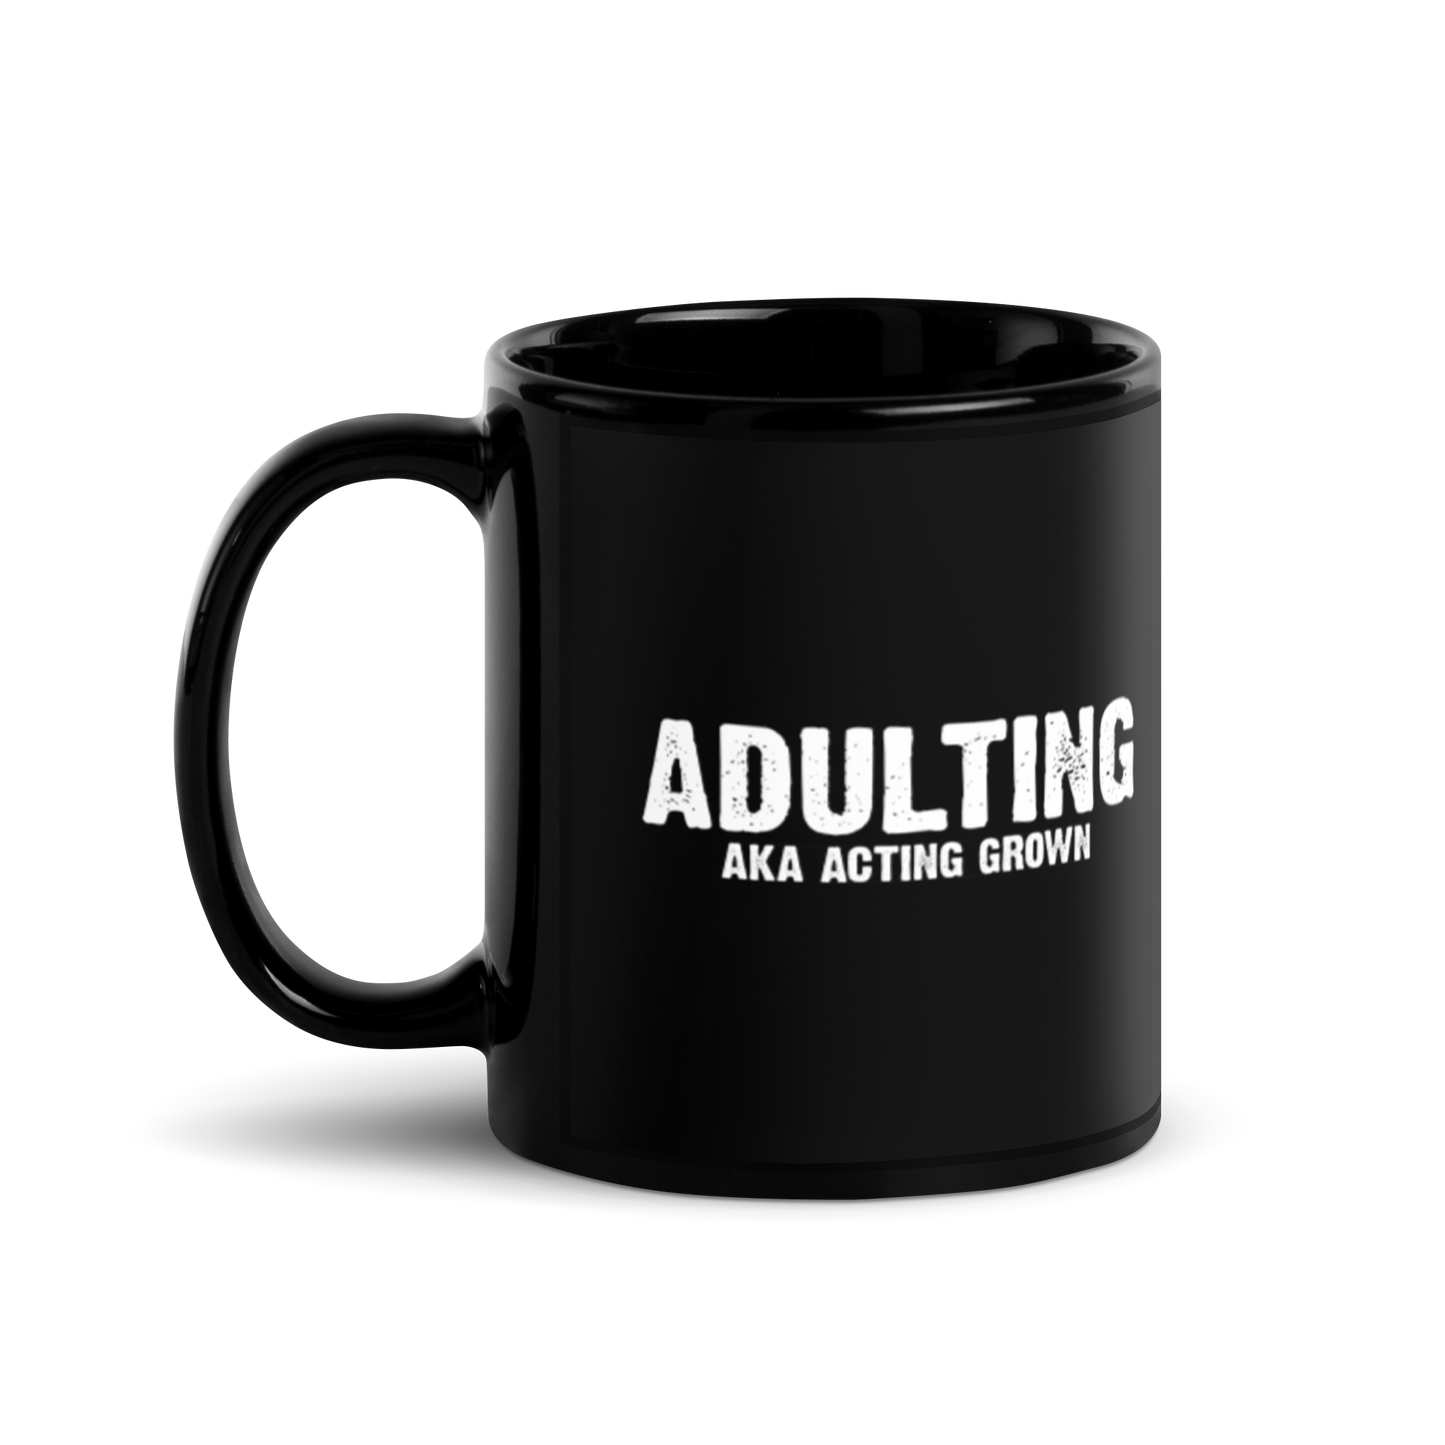 Adulting, AKA Acting Grown - Funny Mug